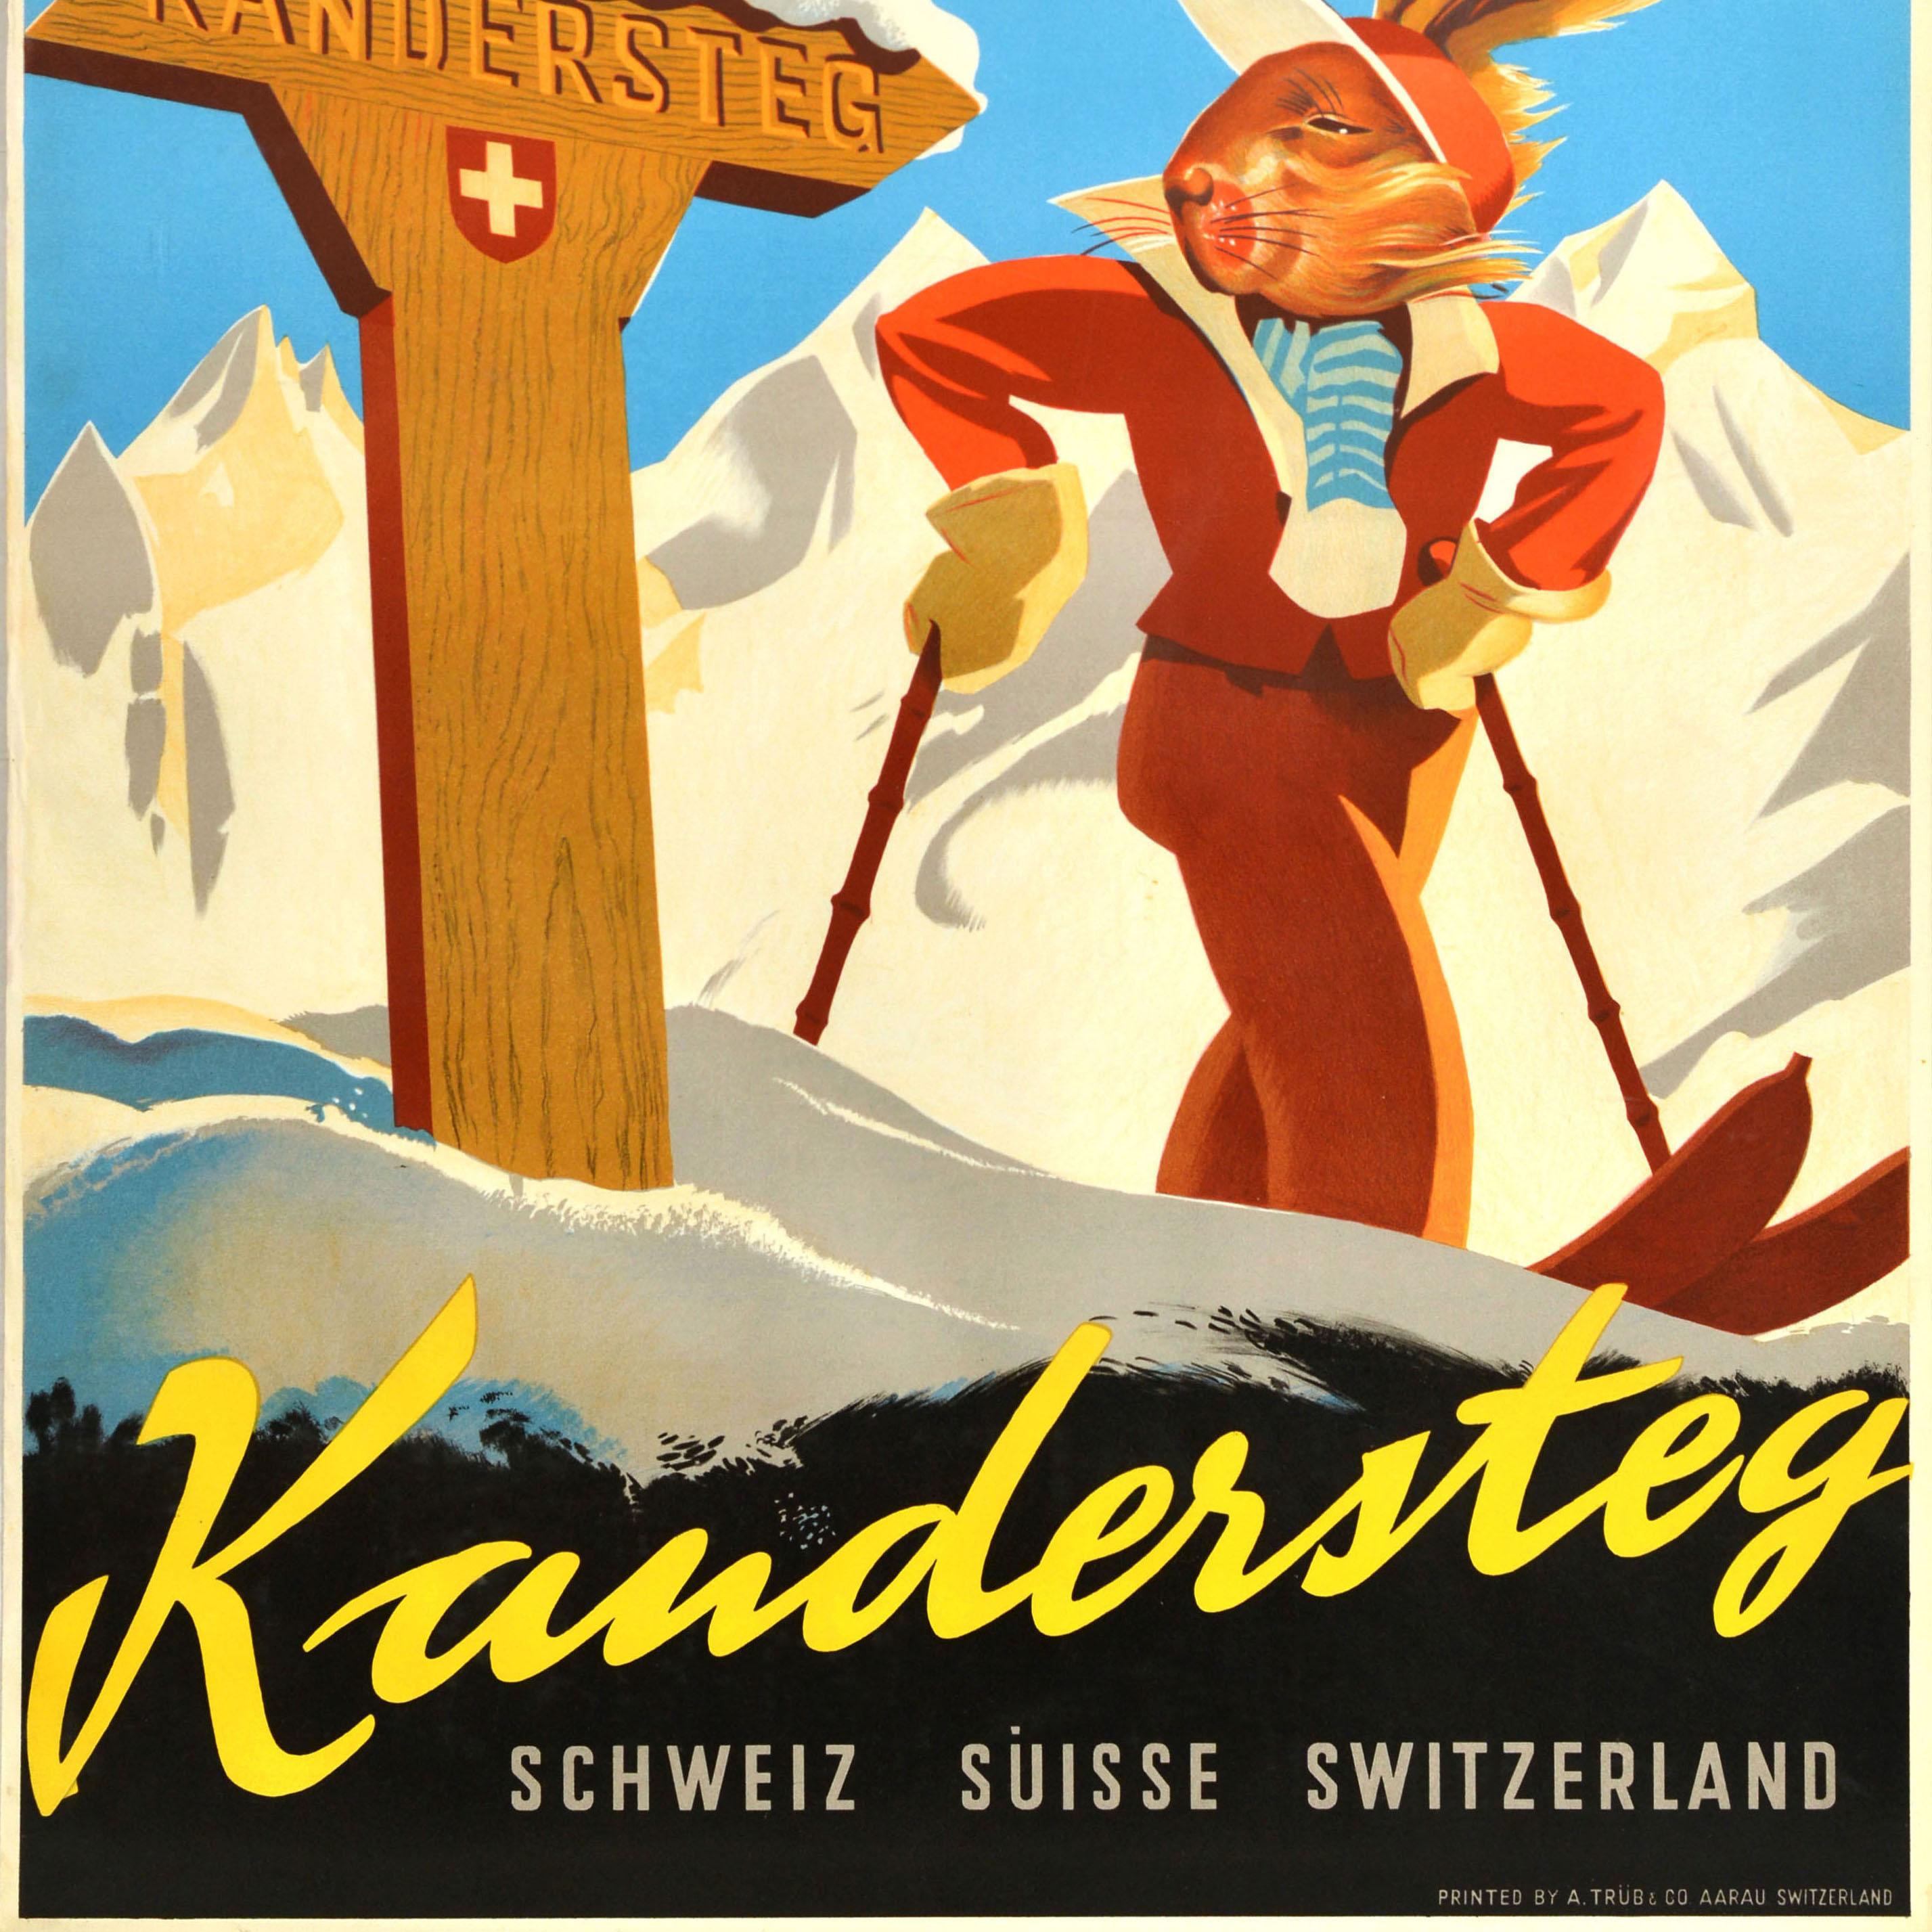 Swiss Original Vintage Winter Sports Poster Kandersteg Schweiz Suisse Switzerland Ski For Sale